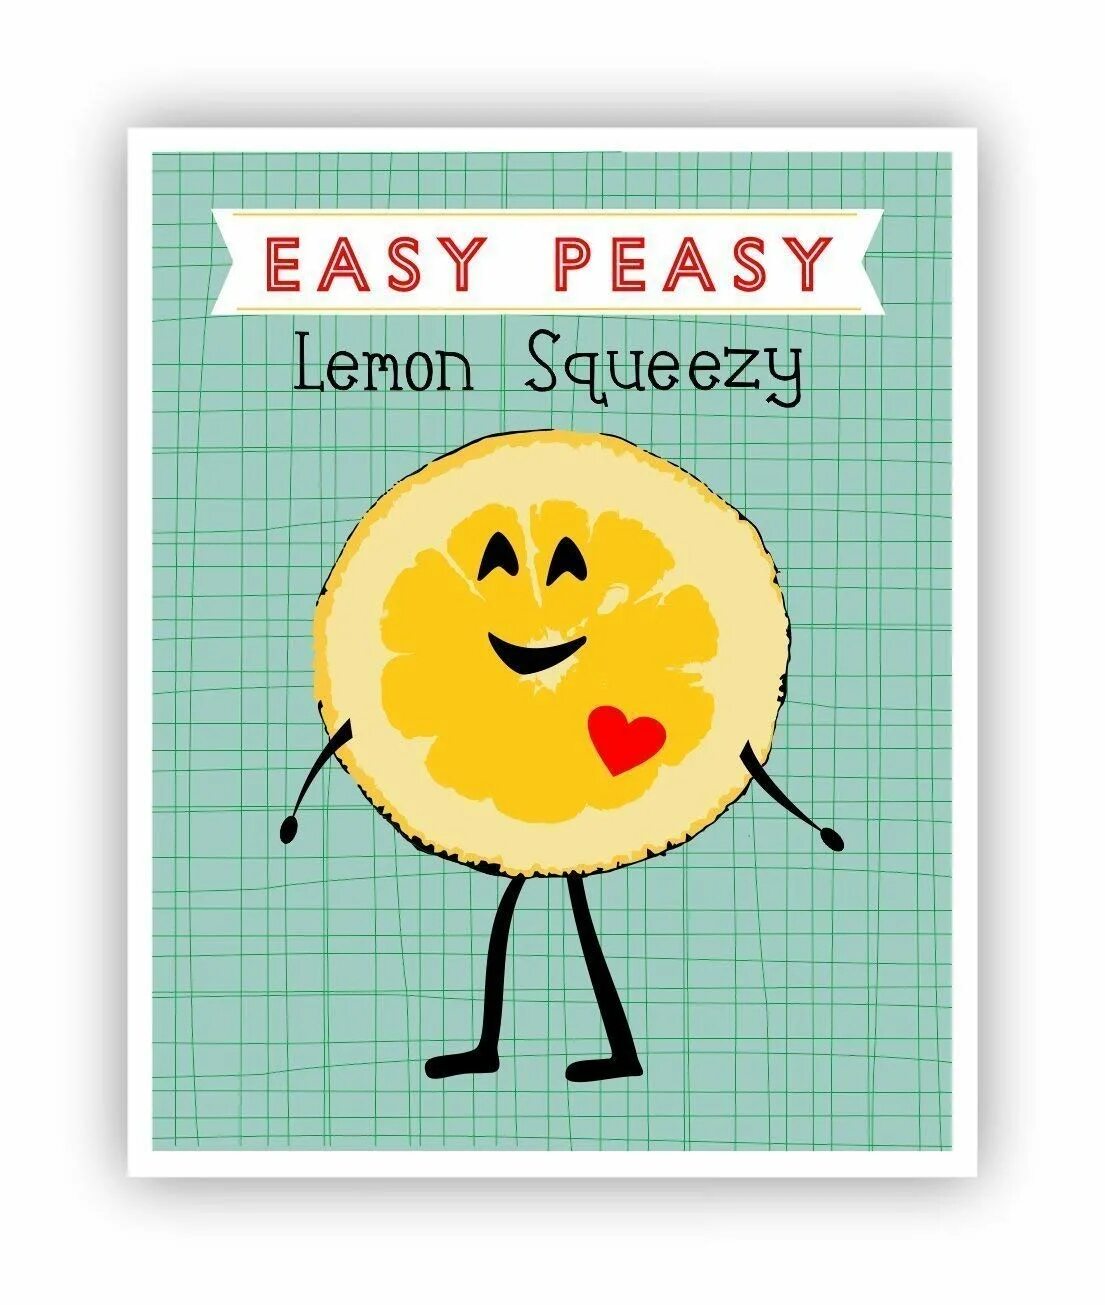 Easy Peasy. ИЗИ пизи Лемон. Easy Peasy Lemon Squeezy картинка. ИЗИ Бризи Леман сквизи. Easy peasy lemon